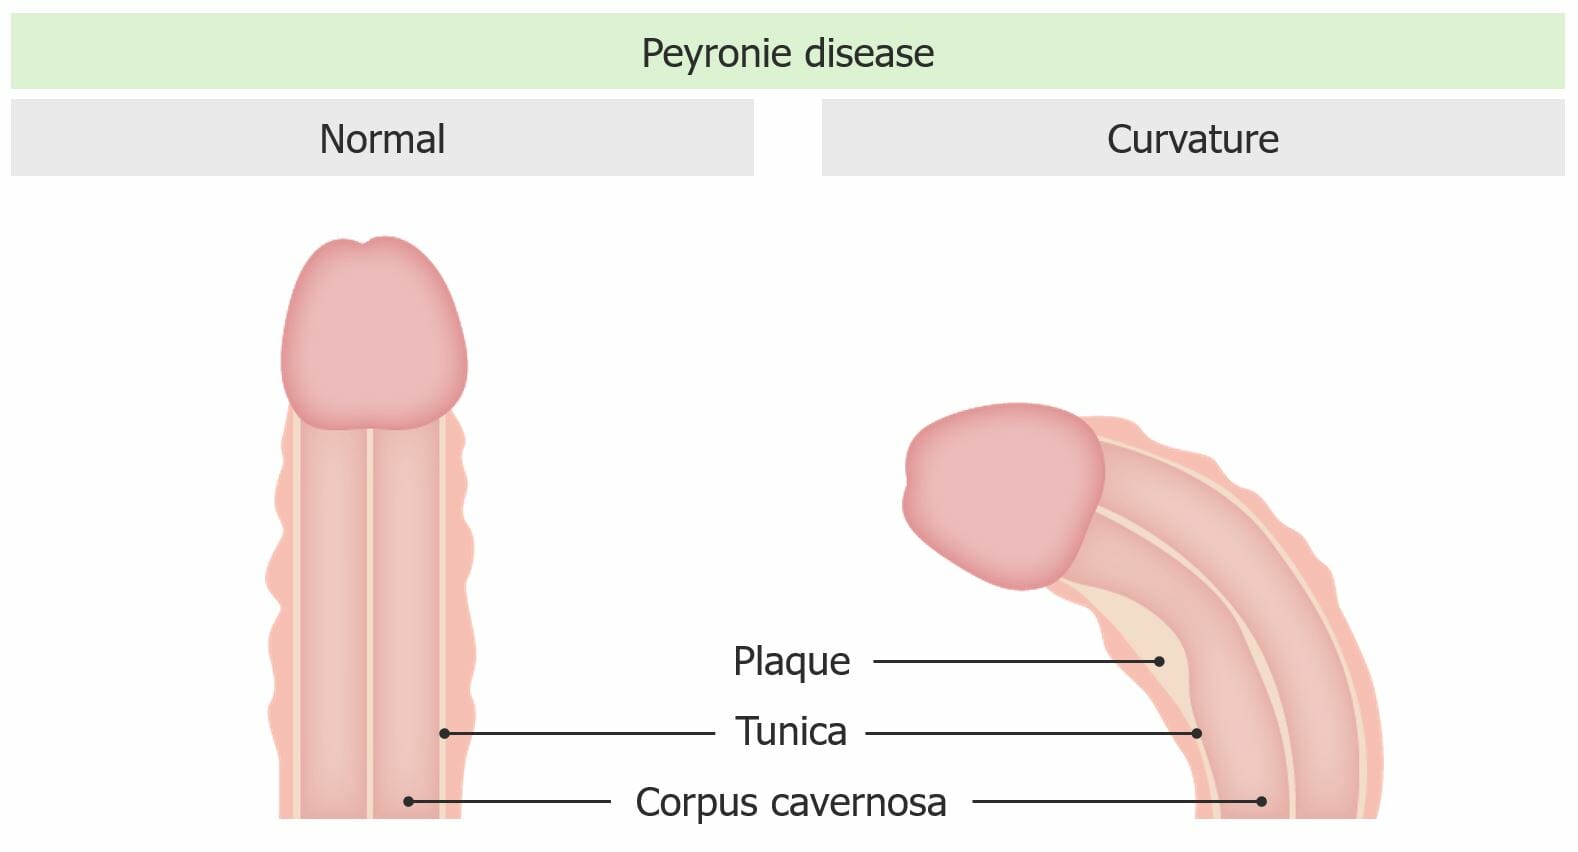 Peyronie disease